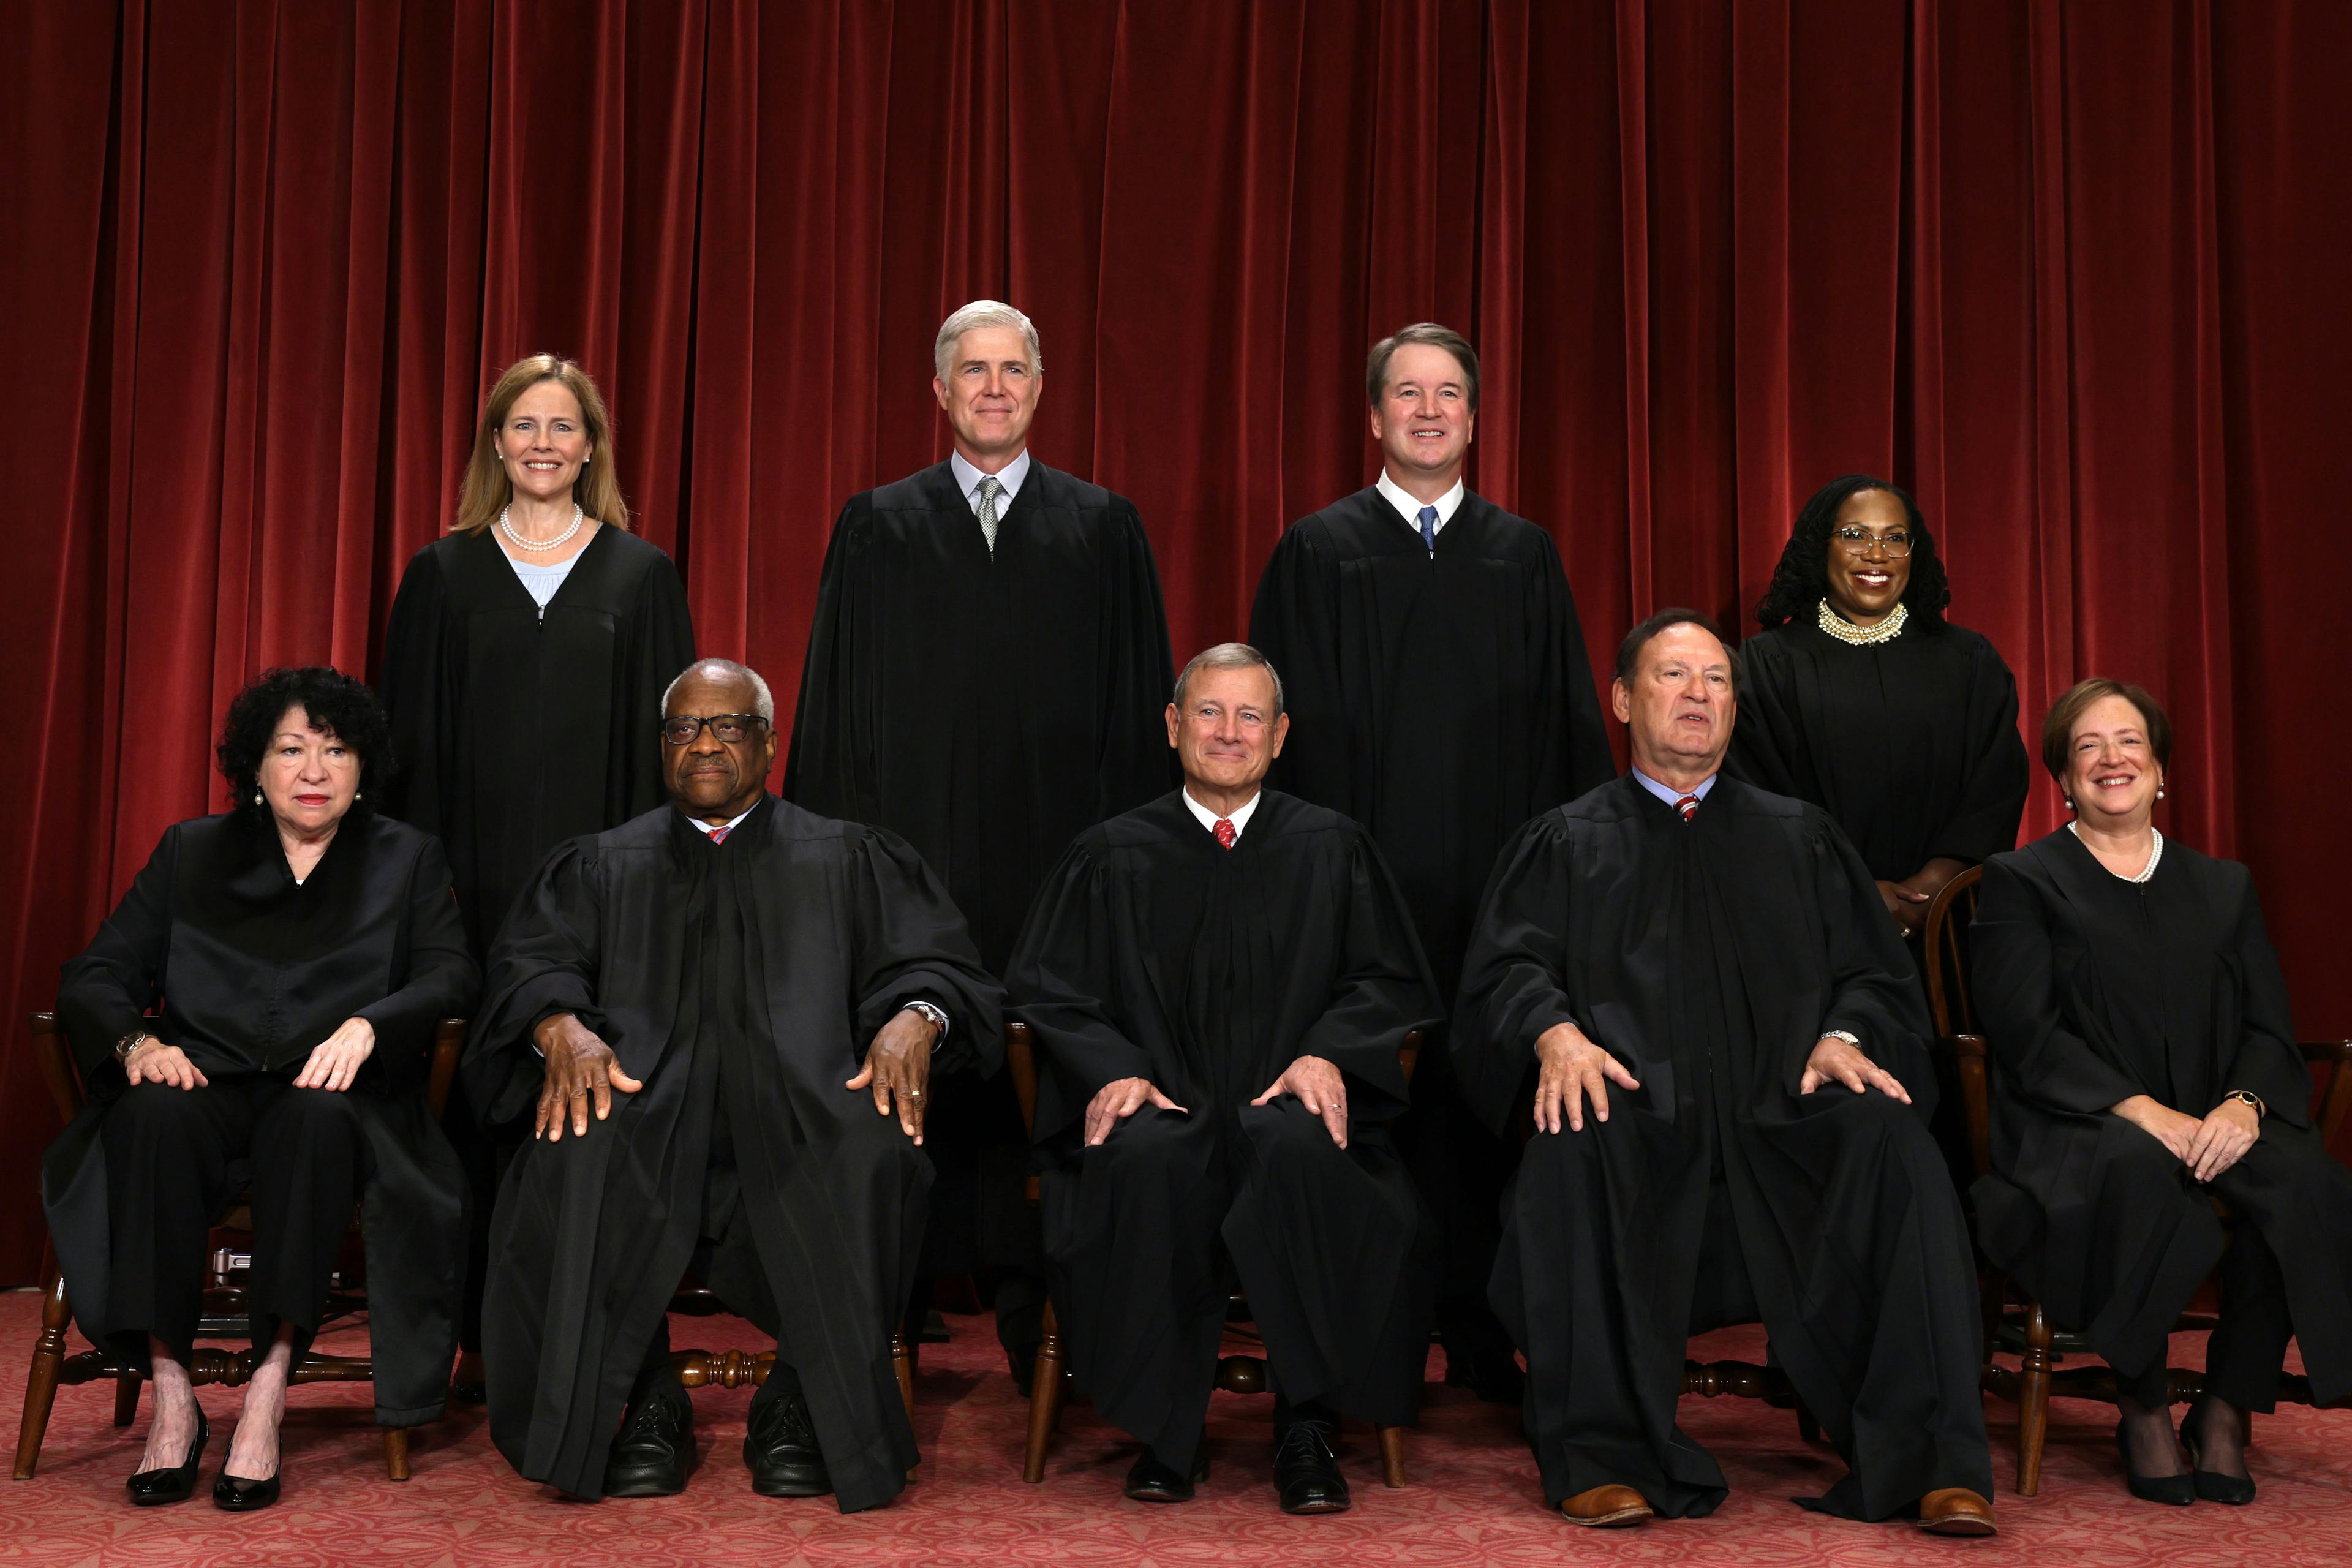 The nine SCOTUS justices